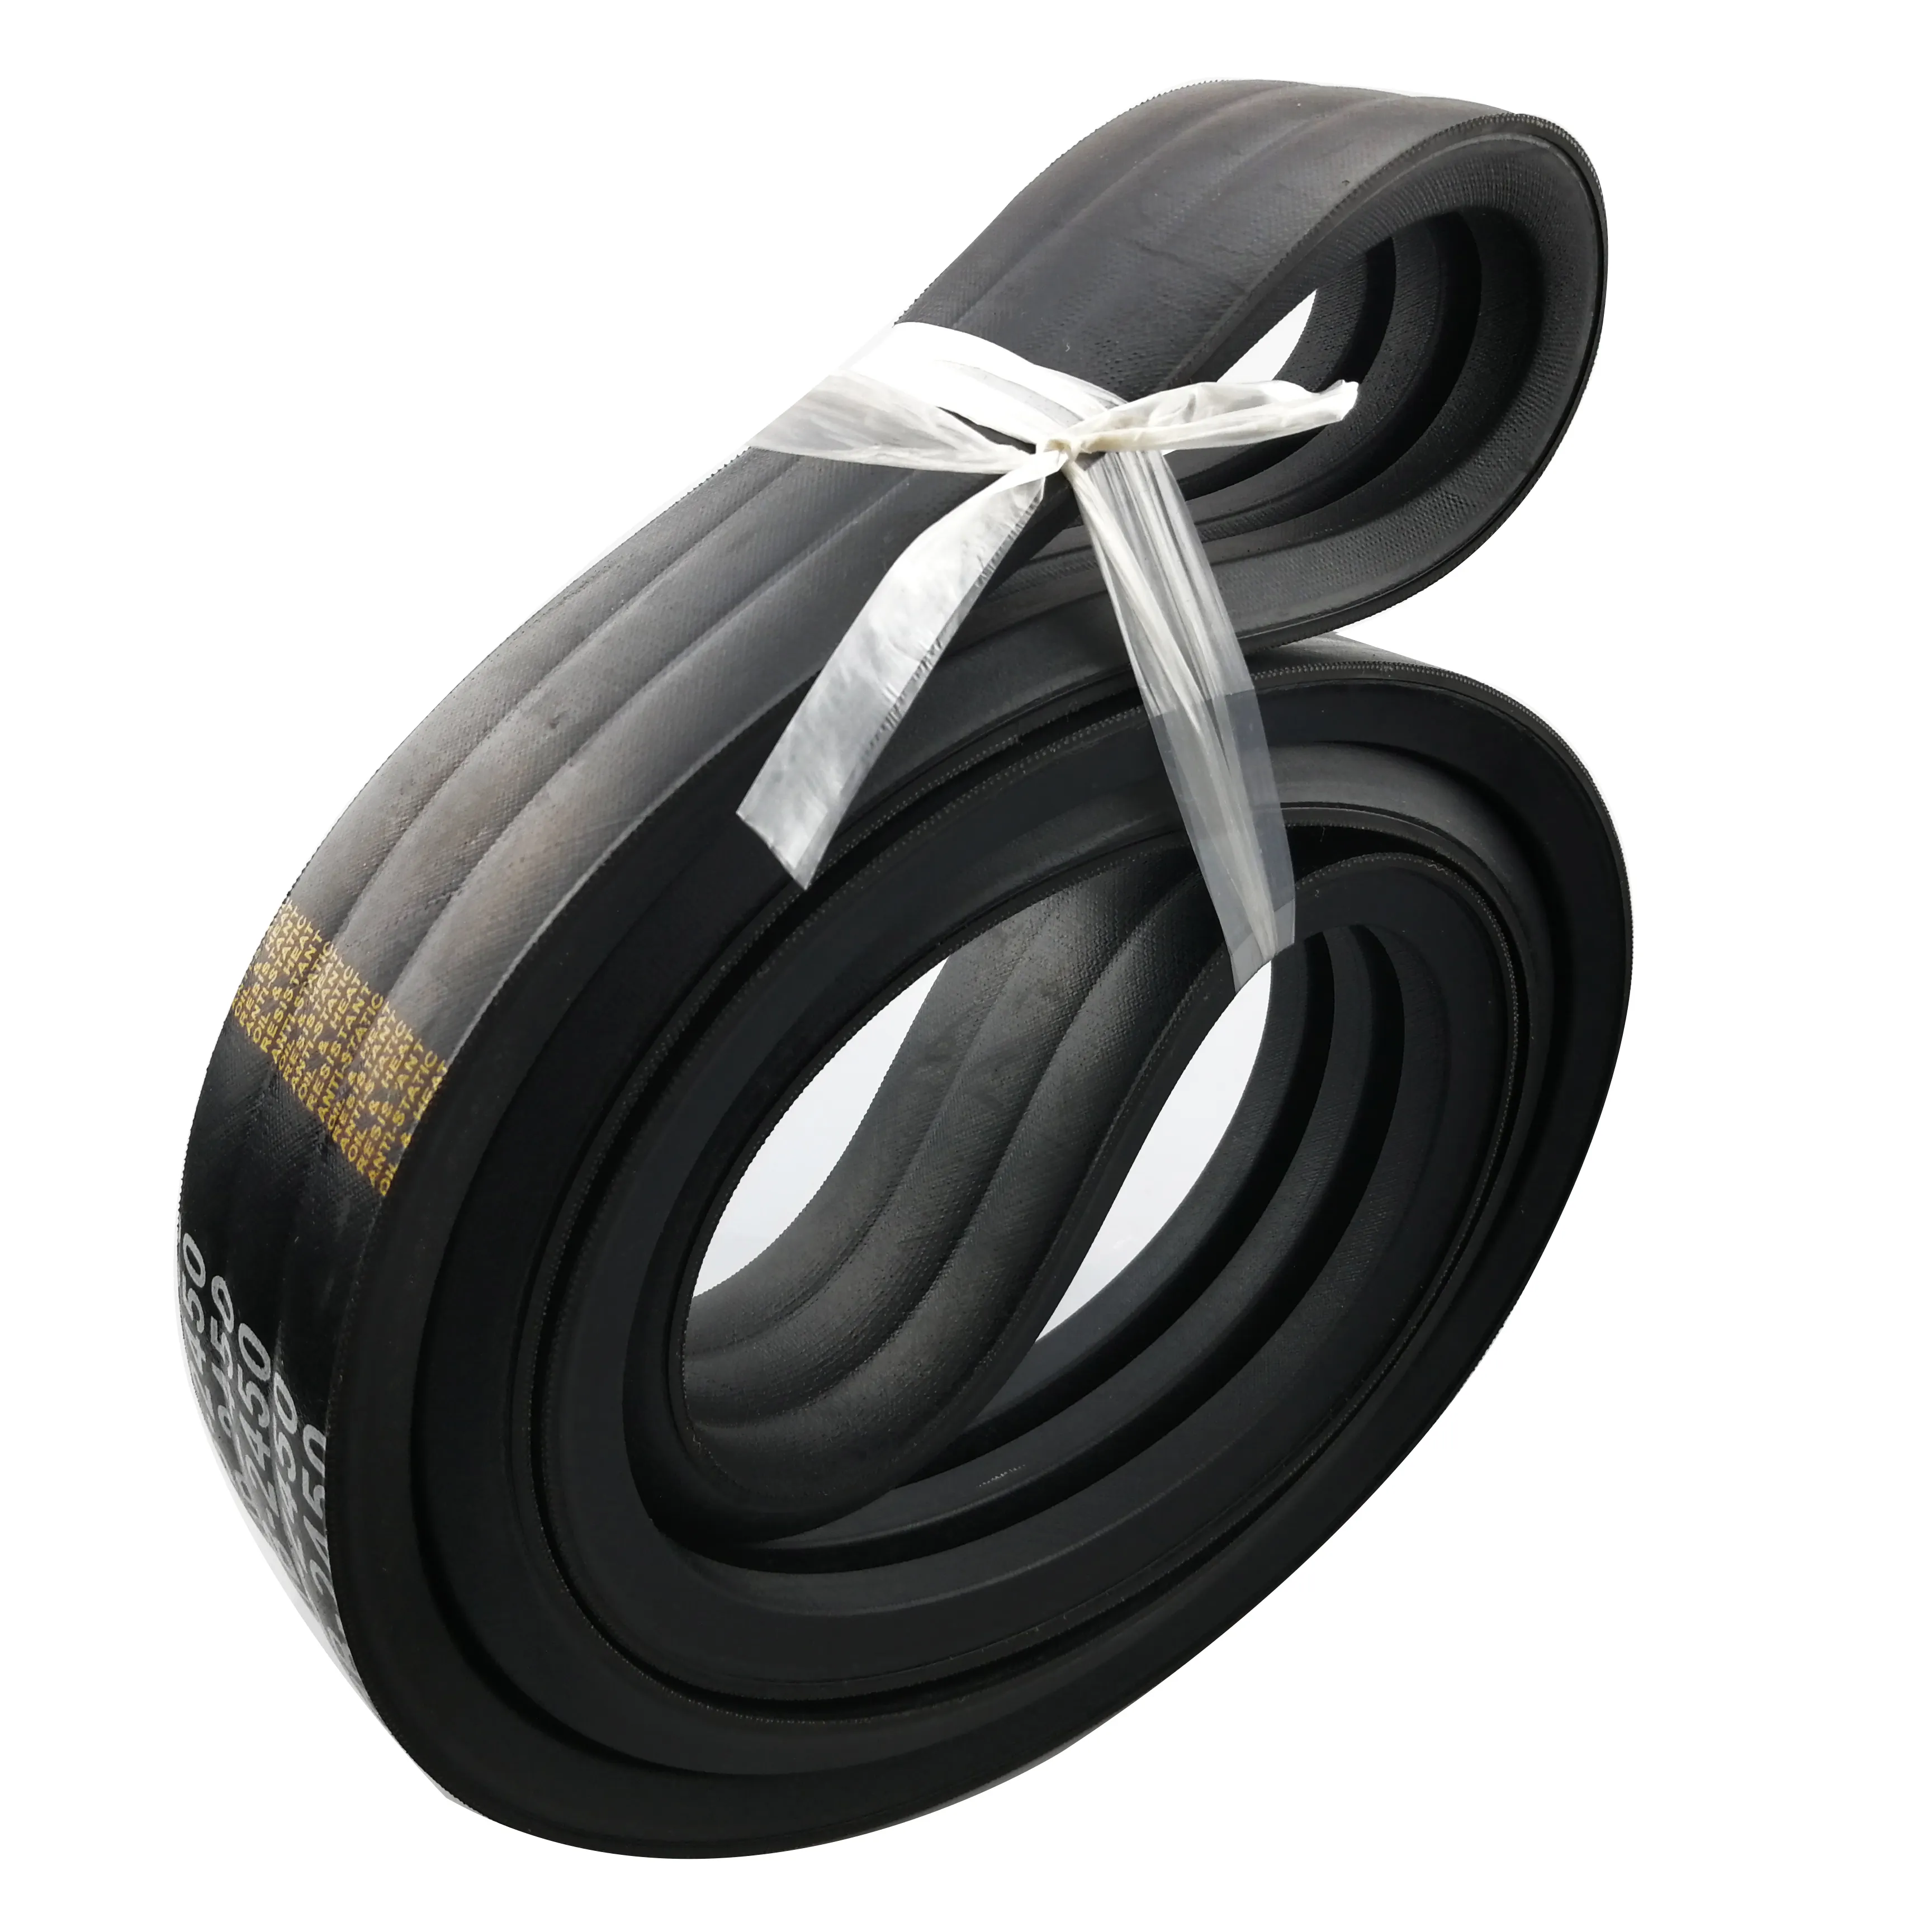 Transmissão suave Banded Borracha clássica V-Belt Bj(Rb) Máquinas industriais Universal Driving V-Belts